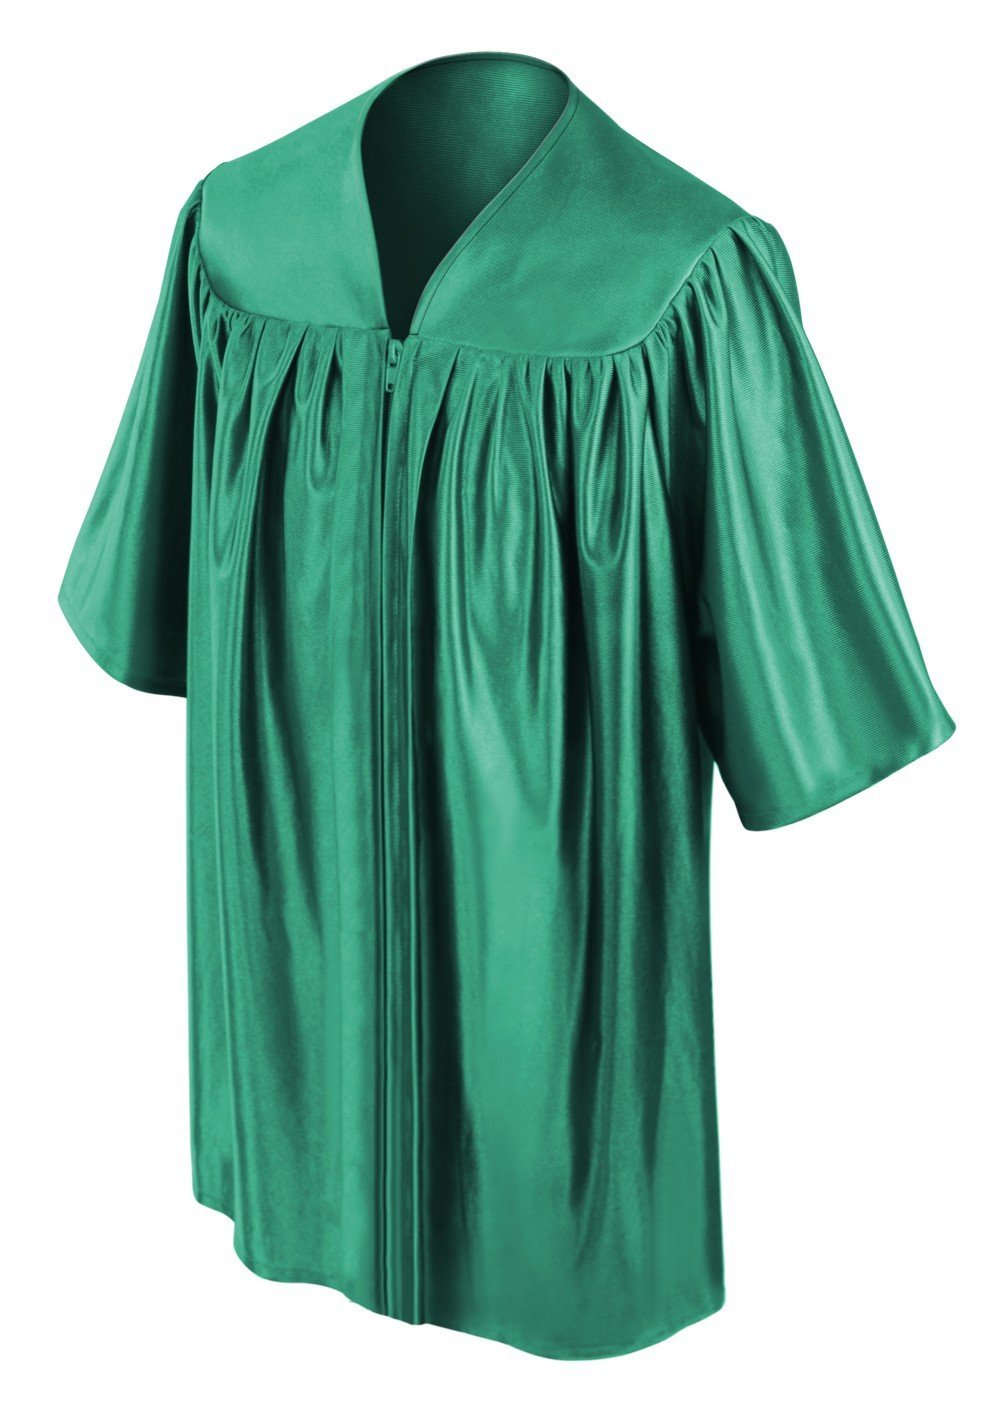 Child's Emerald Green Choir Robe - Church Choir Robes - ChoirBuy